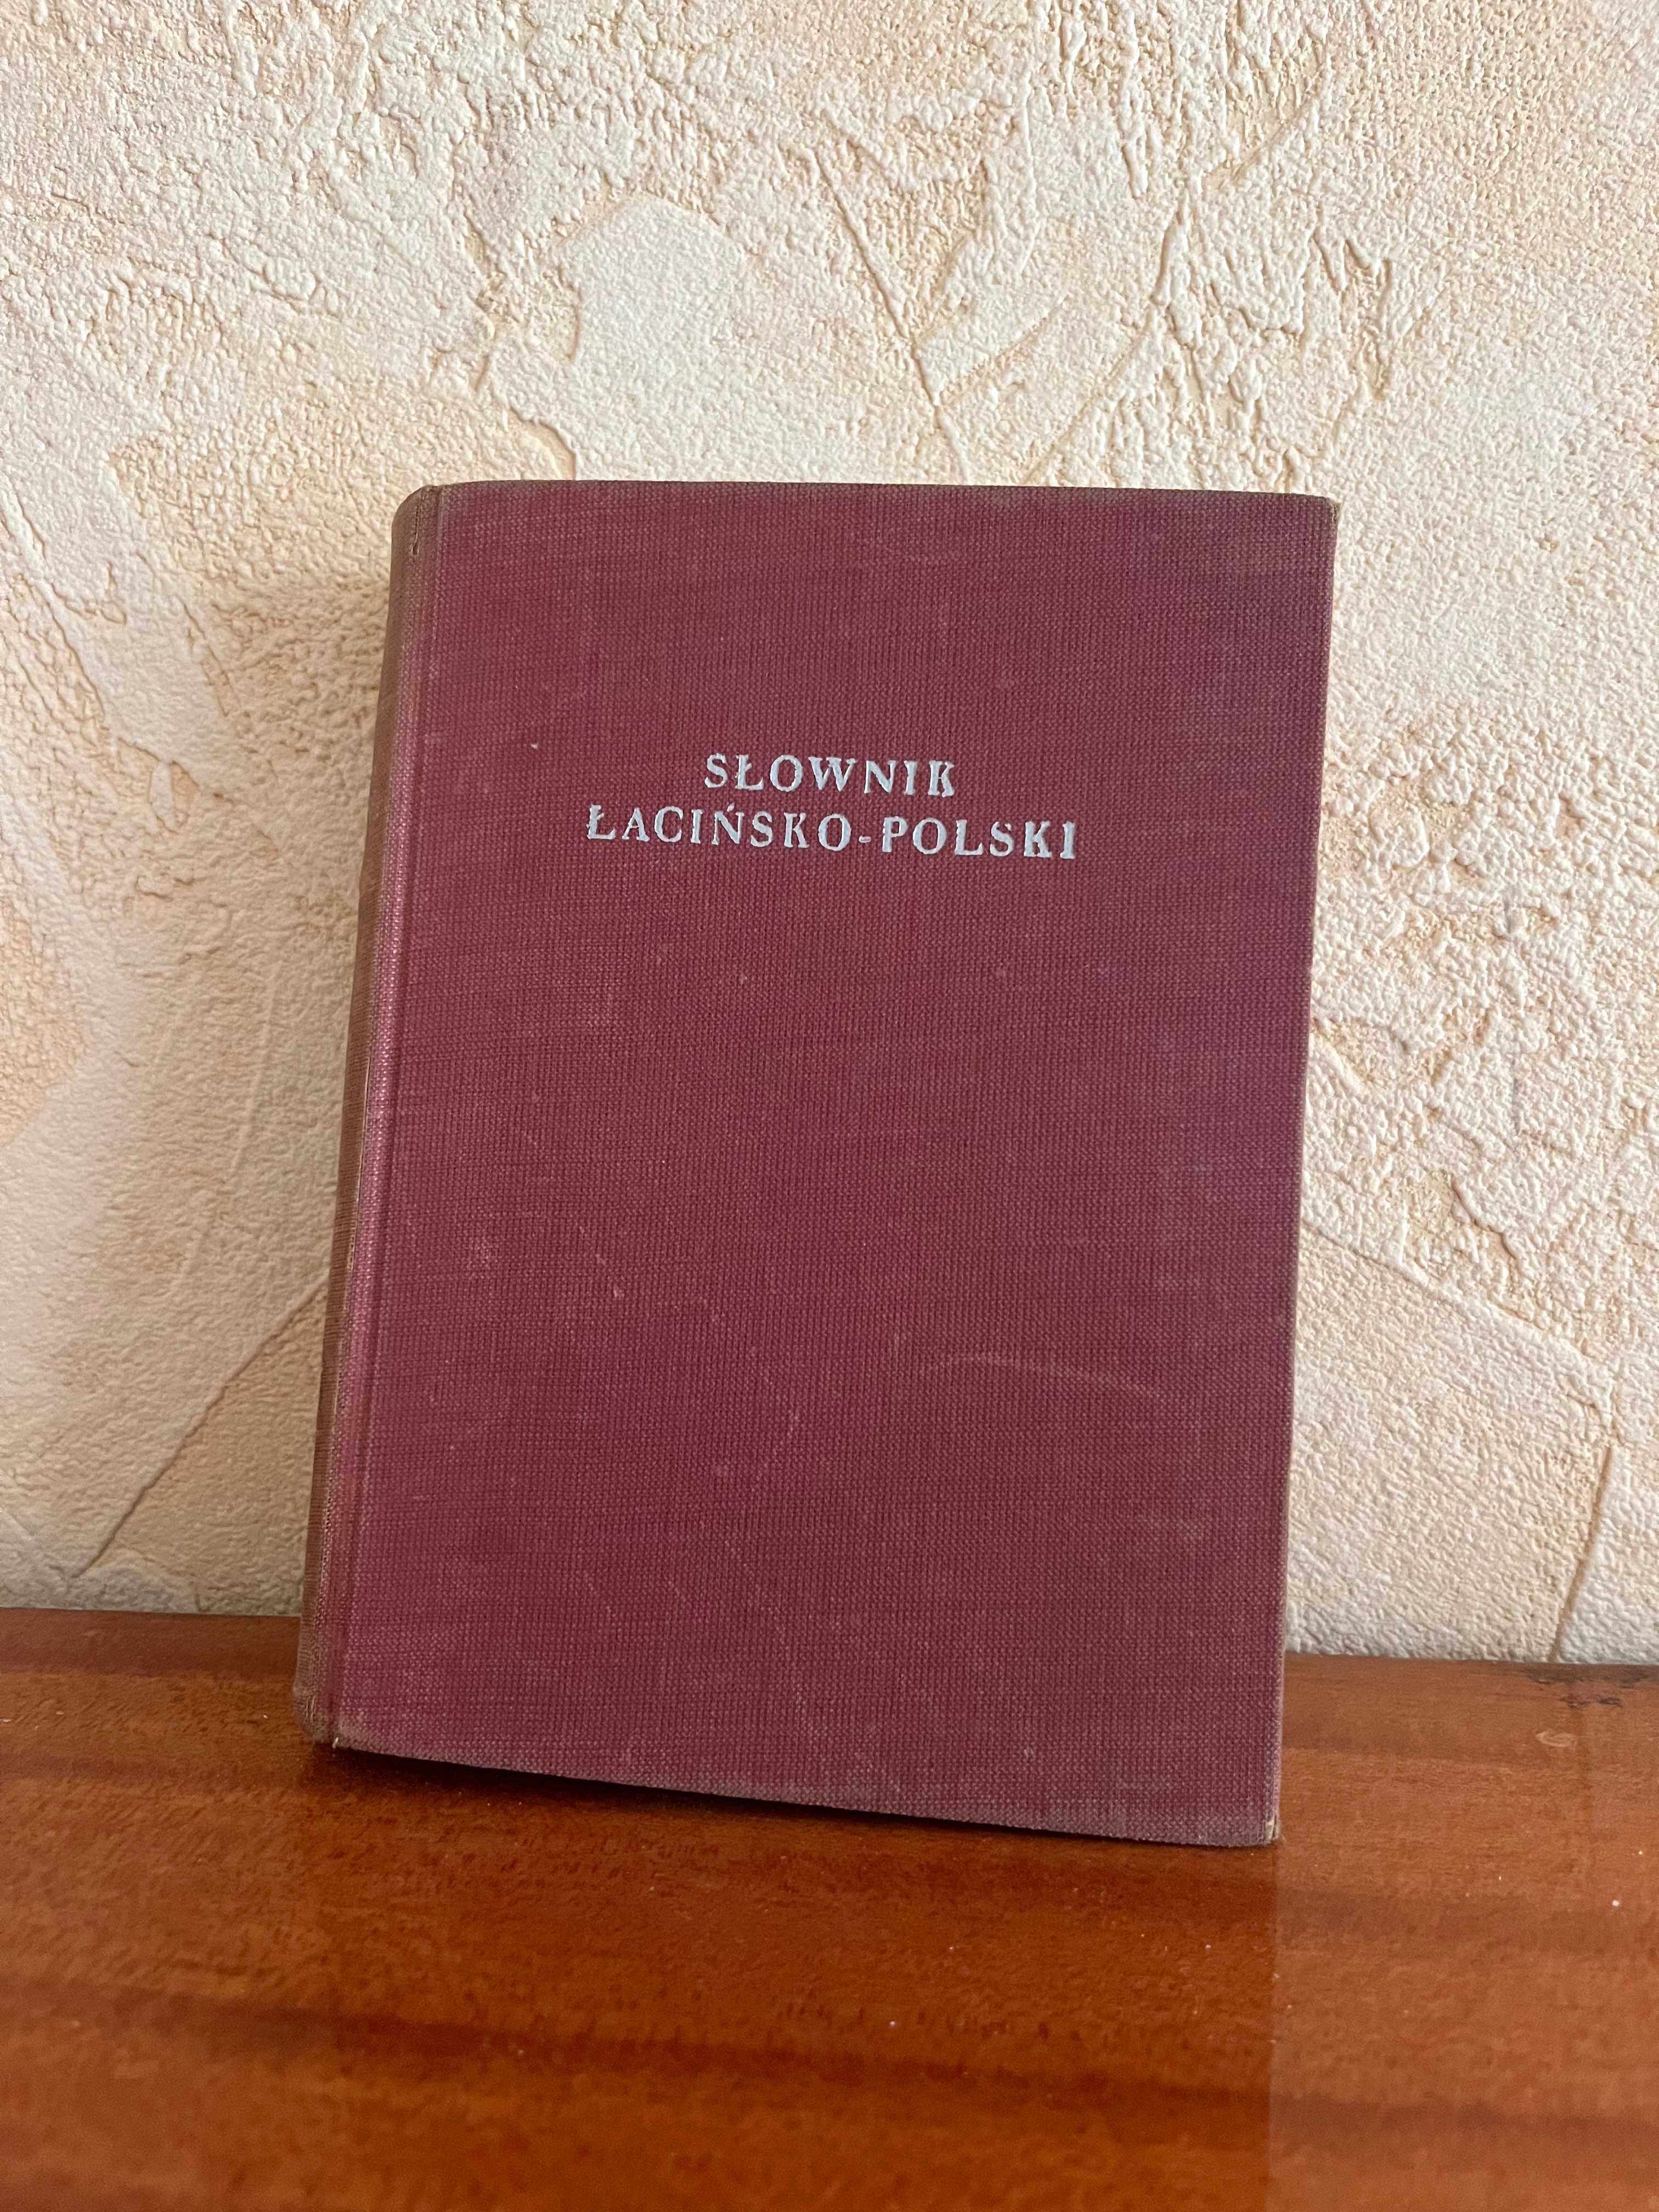 Słownik łacińsko-polski (1957 rok)